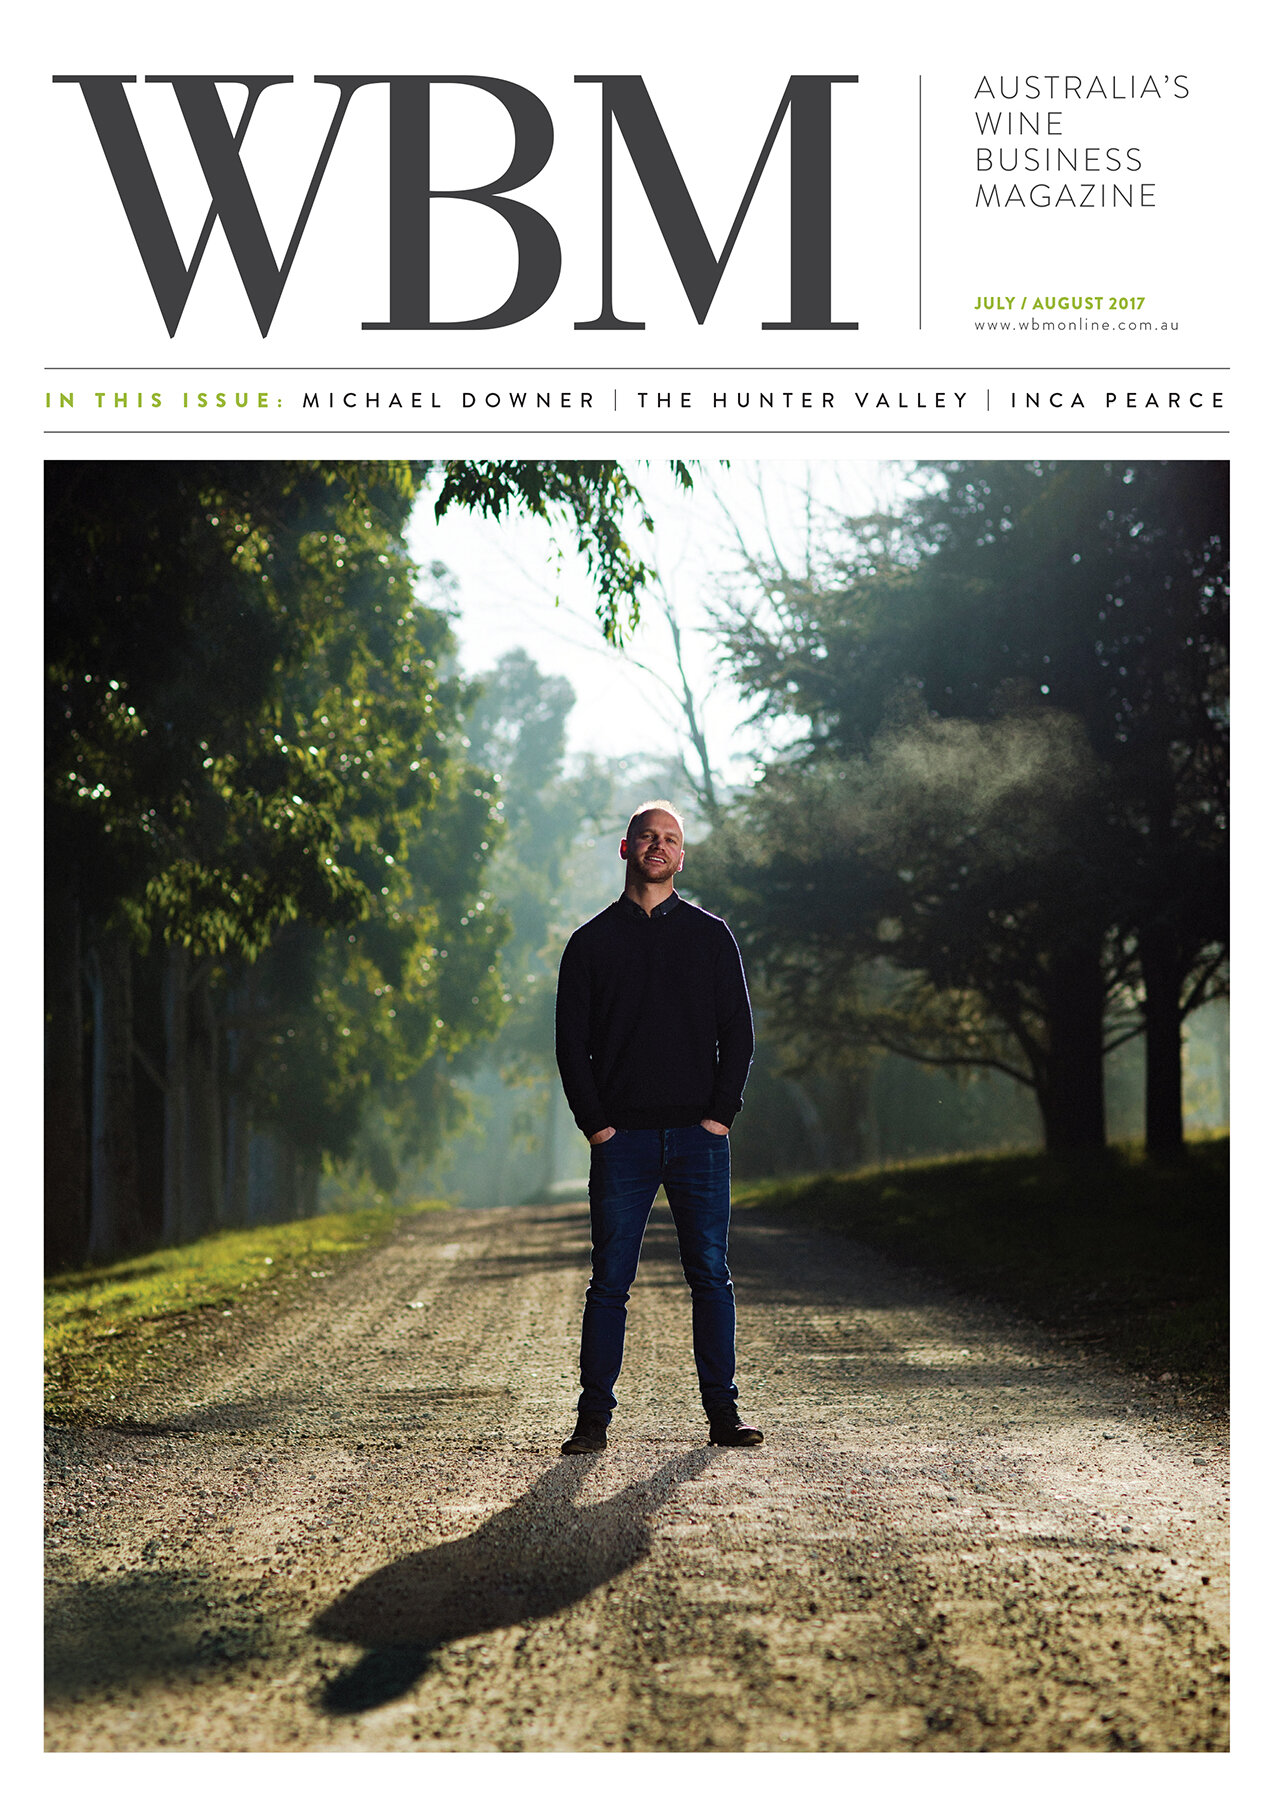 WBM 1707 July August 2017 cover.jpg